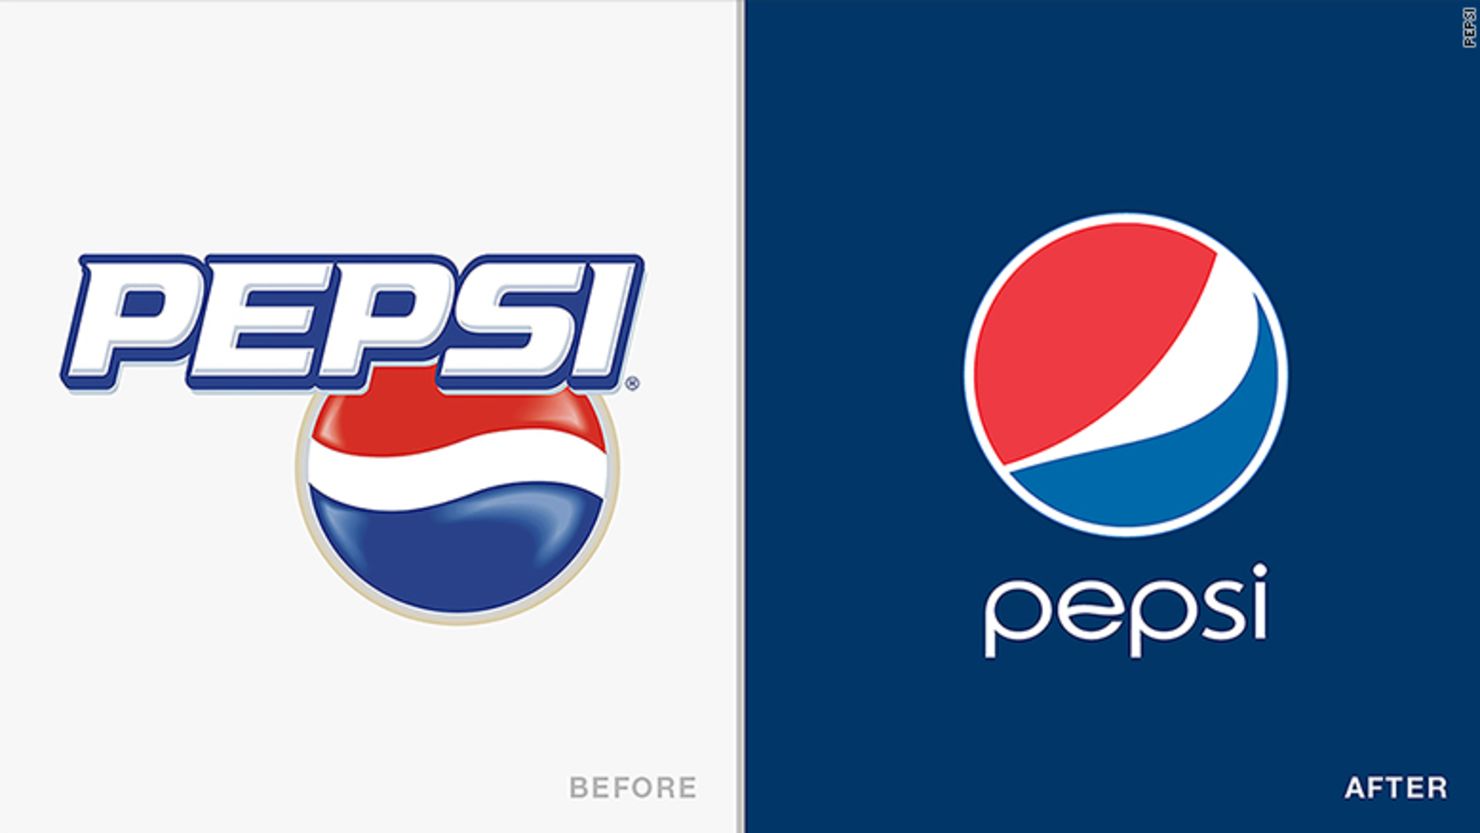 El logo de Pepsi cambió varias veces con los años. El de la izquierda es el logo usado de 2003 a 2006 y el de la derecha es el actual.